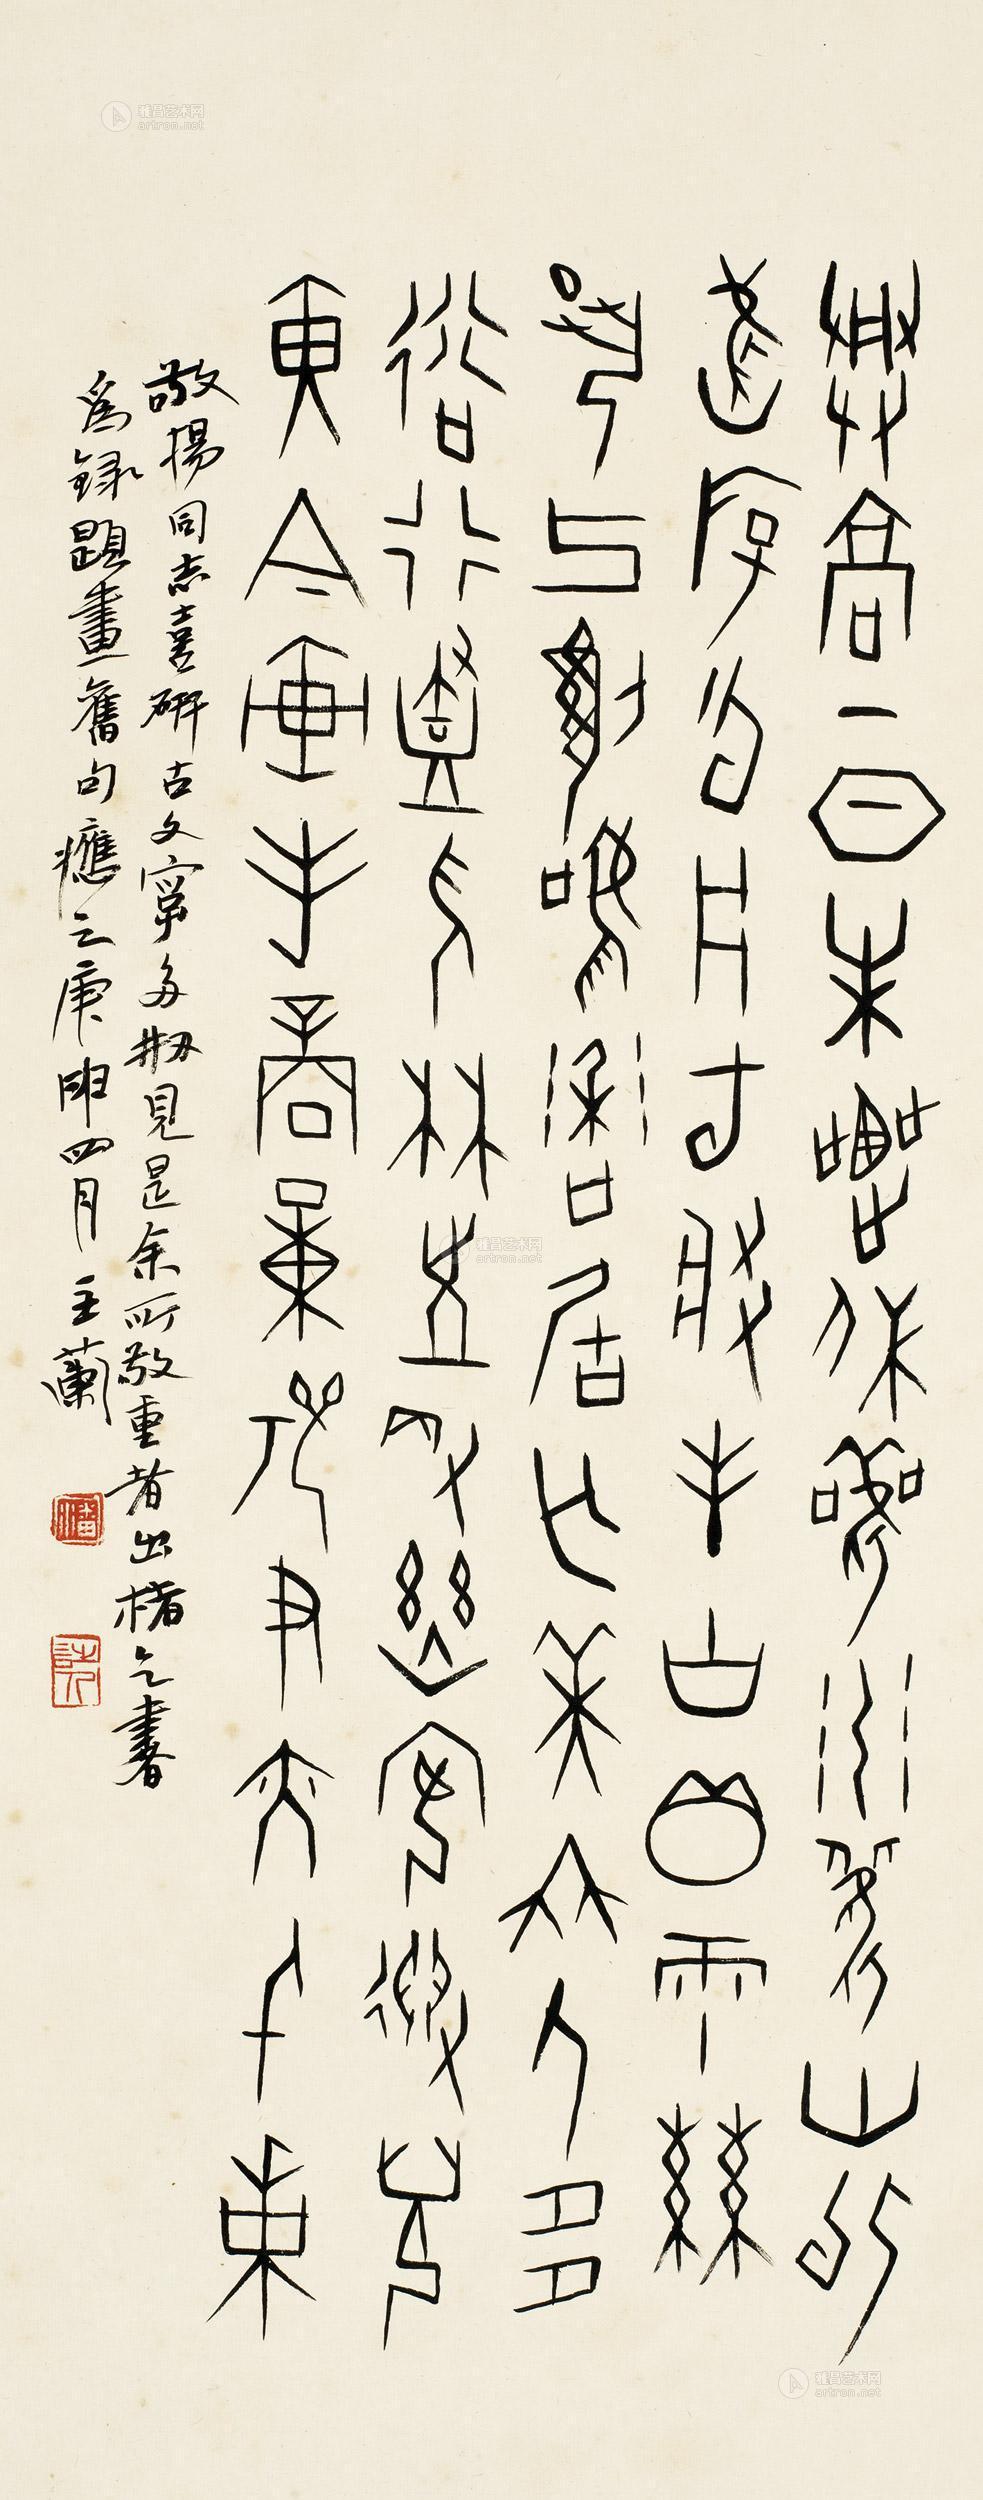 0277 庚申(1980年)作 甲骨文七言诗 立轴 水墨纸本